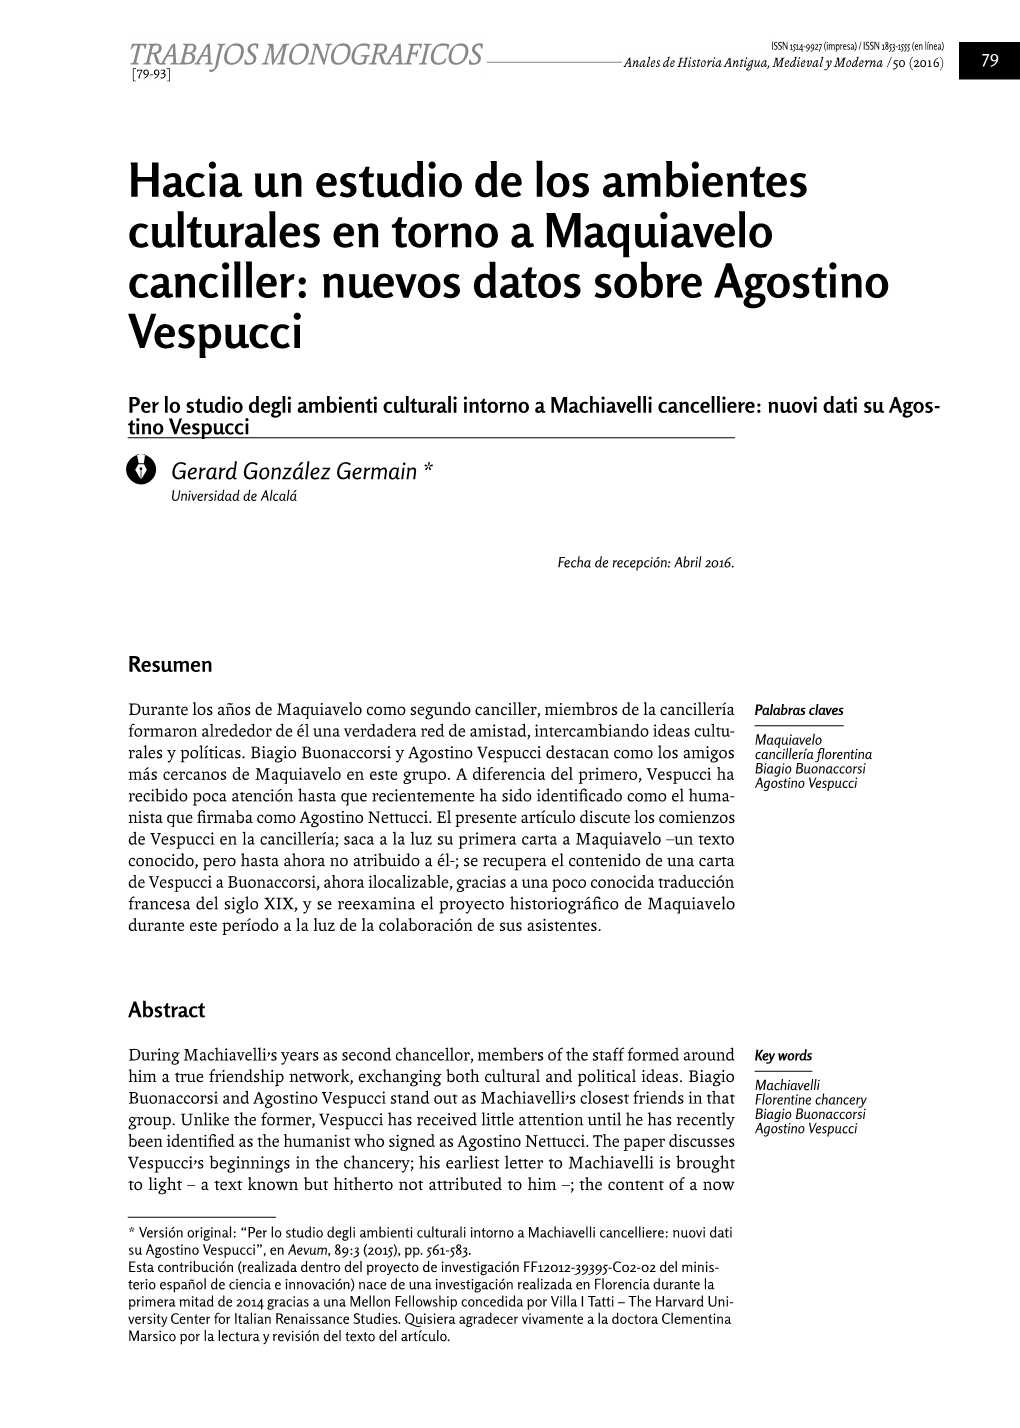 Hacia Un Estudio De Los Ambientes Culturales En Torno a Maquiavelo Canciller: Nuevos Datos Sobre Agostino Vespucci